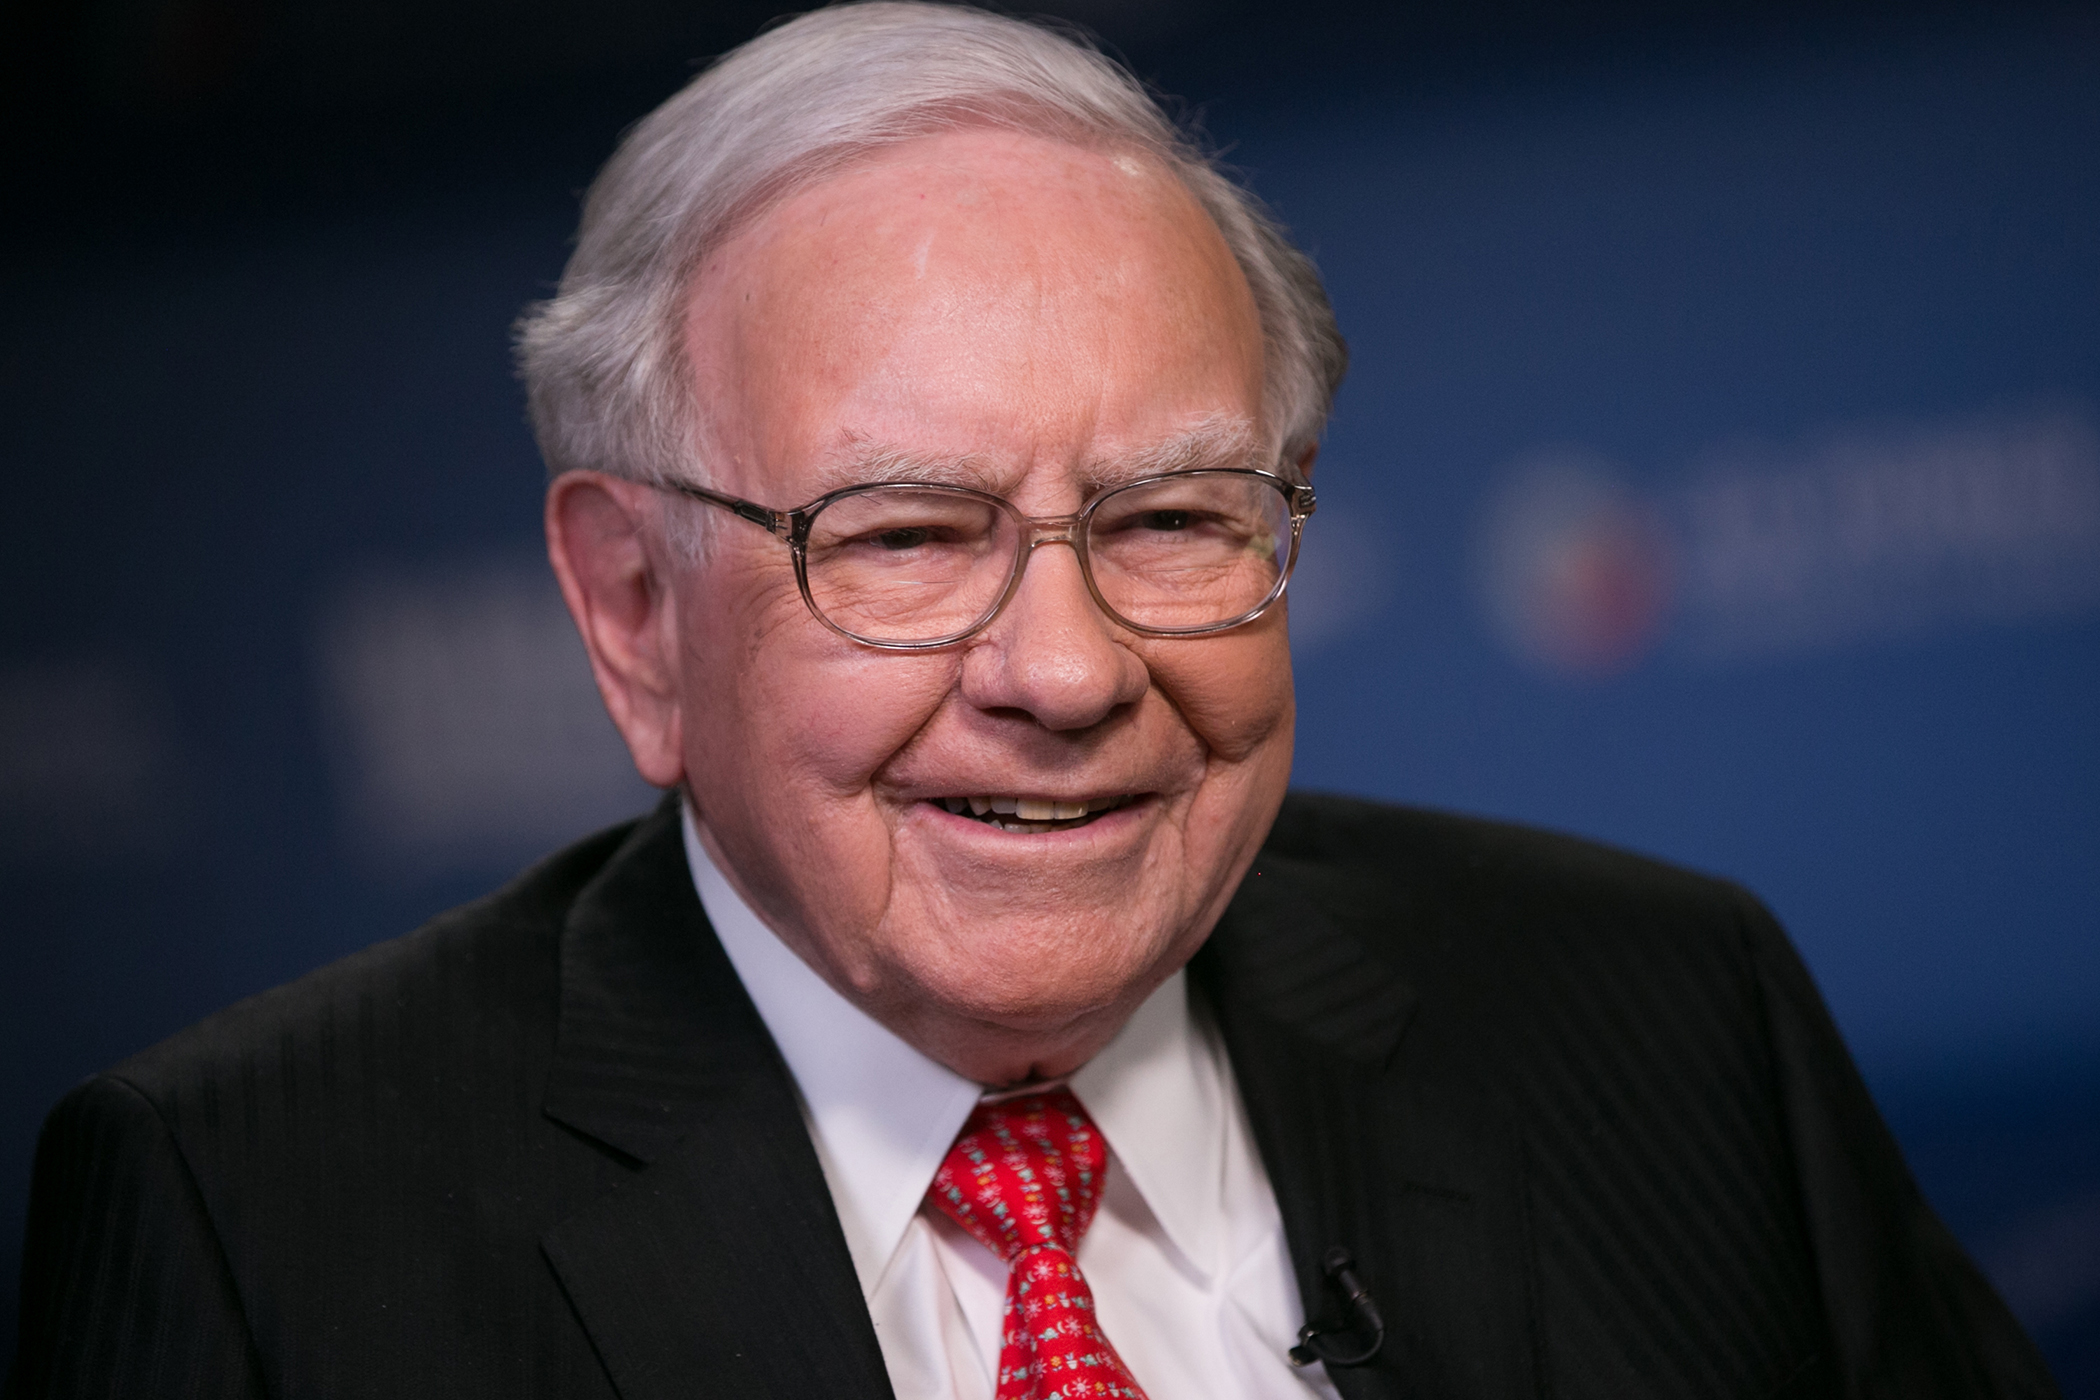 Warren Buffett, CEO of Berkshire Hathaway, on March 31, 2015